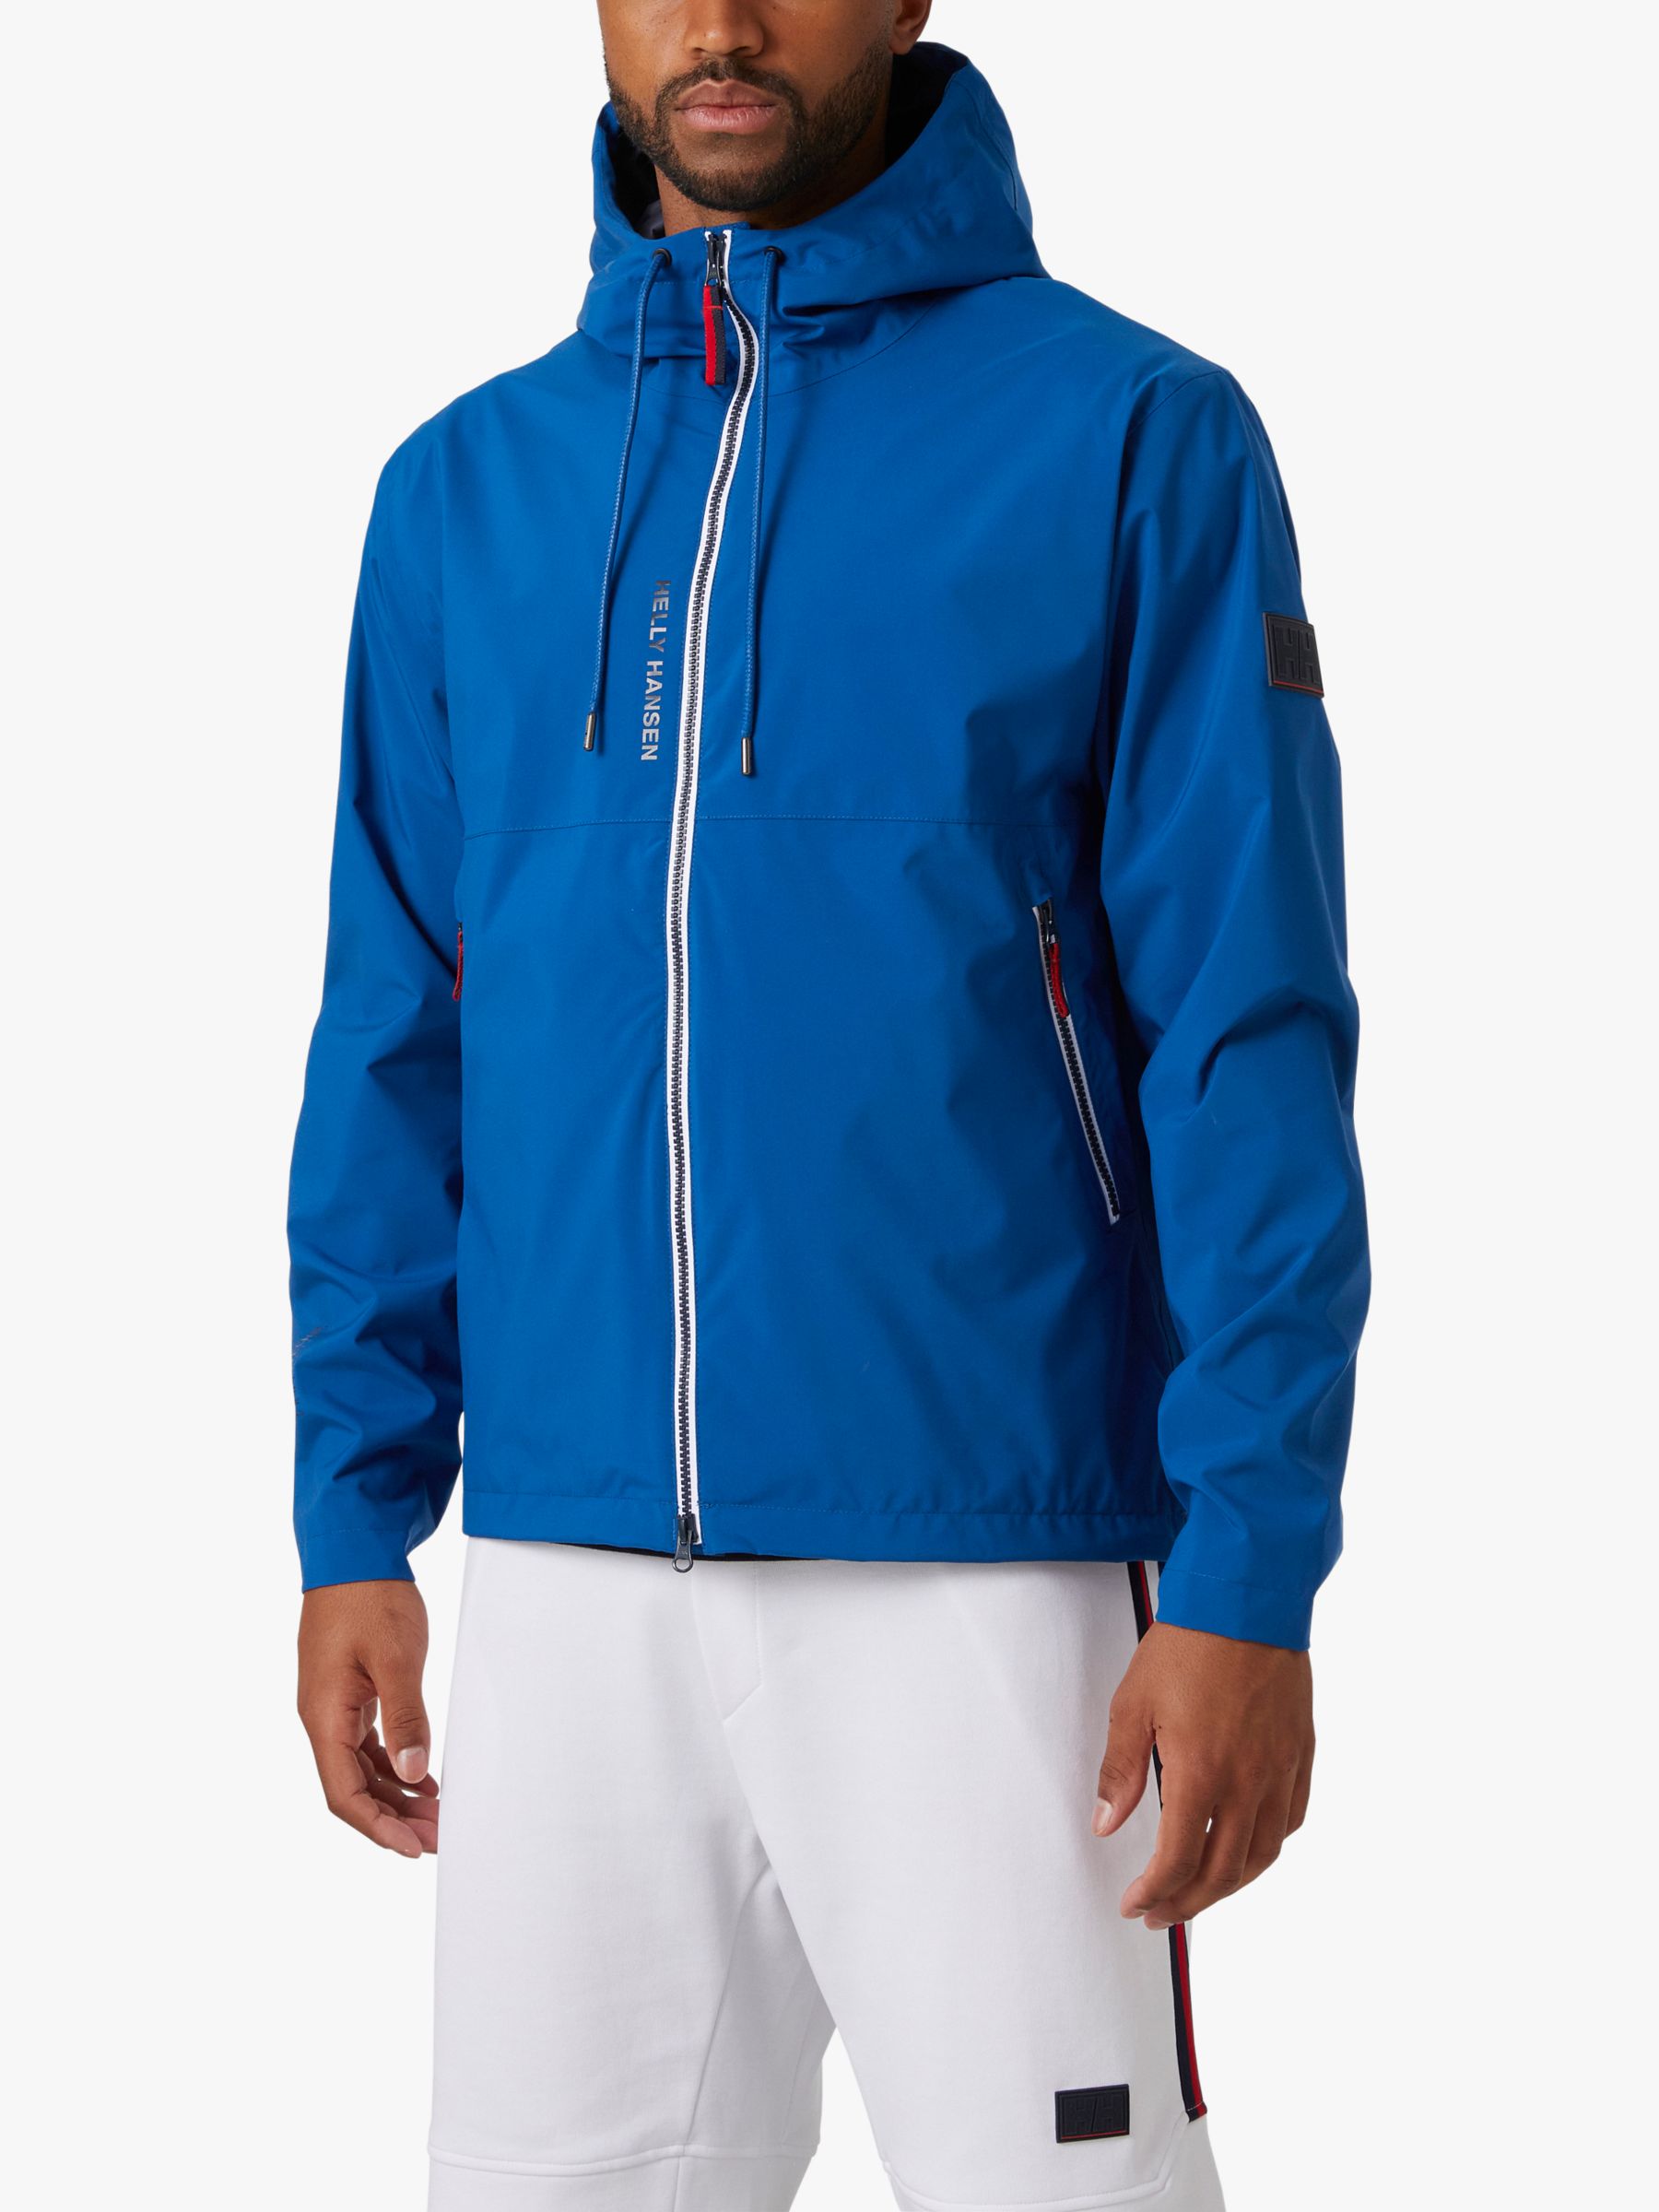 Helly Hansen Men's Rigging Rain Jacket, Fjord, L